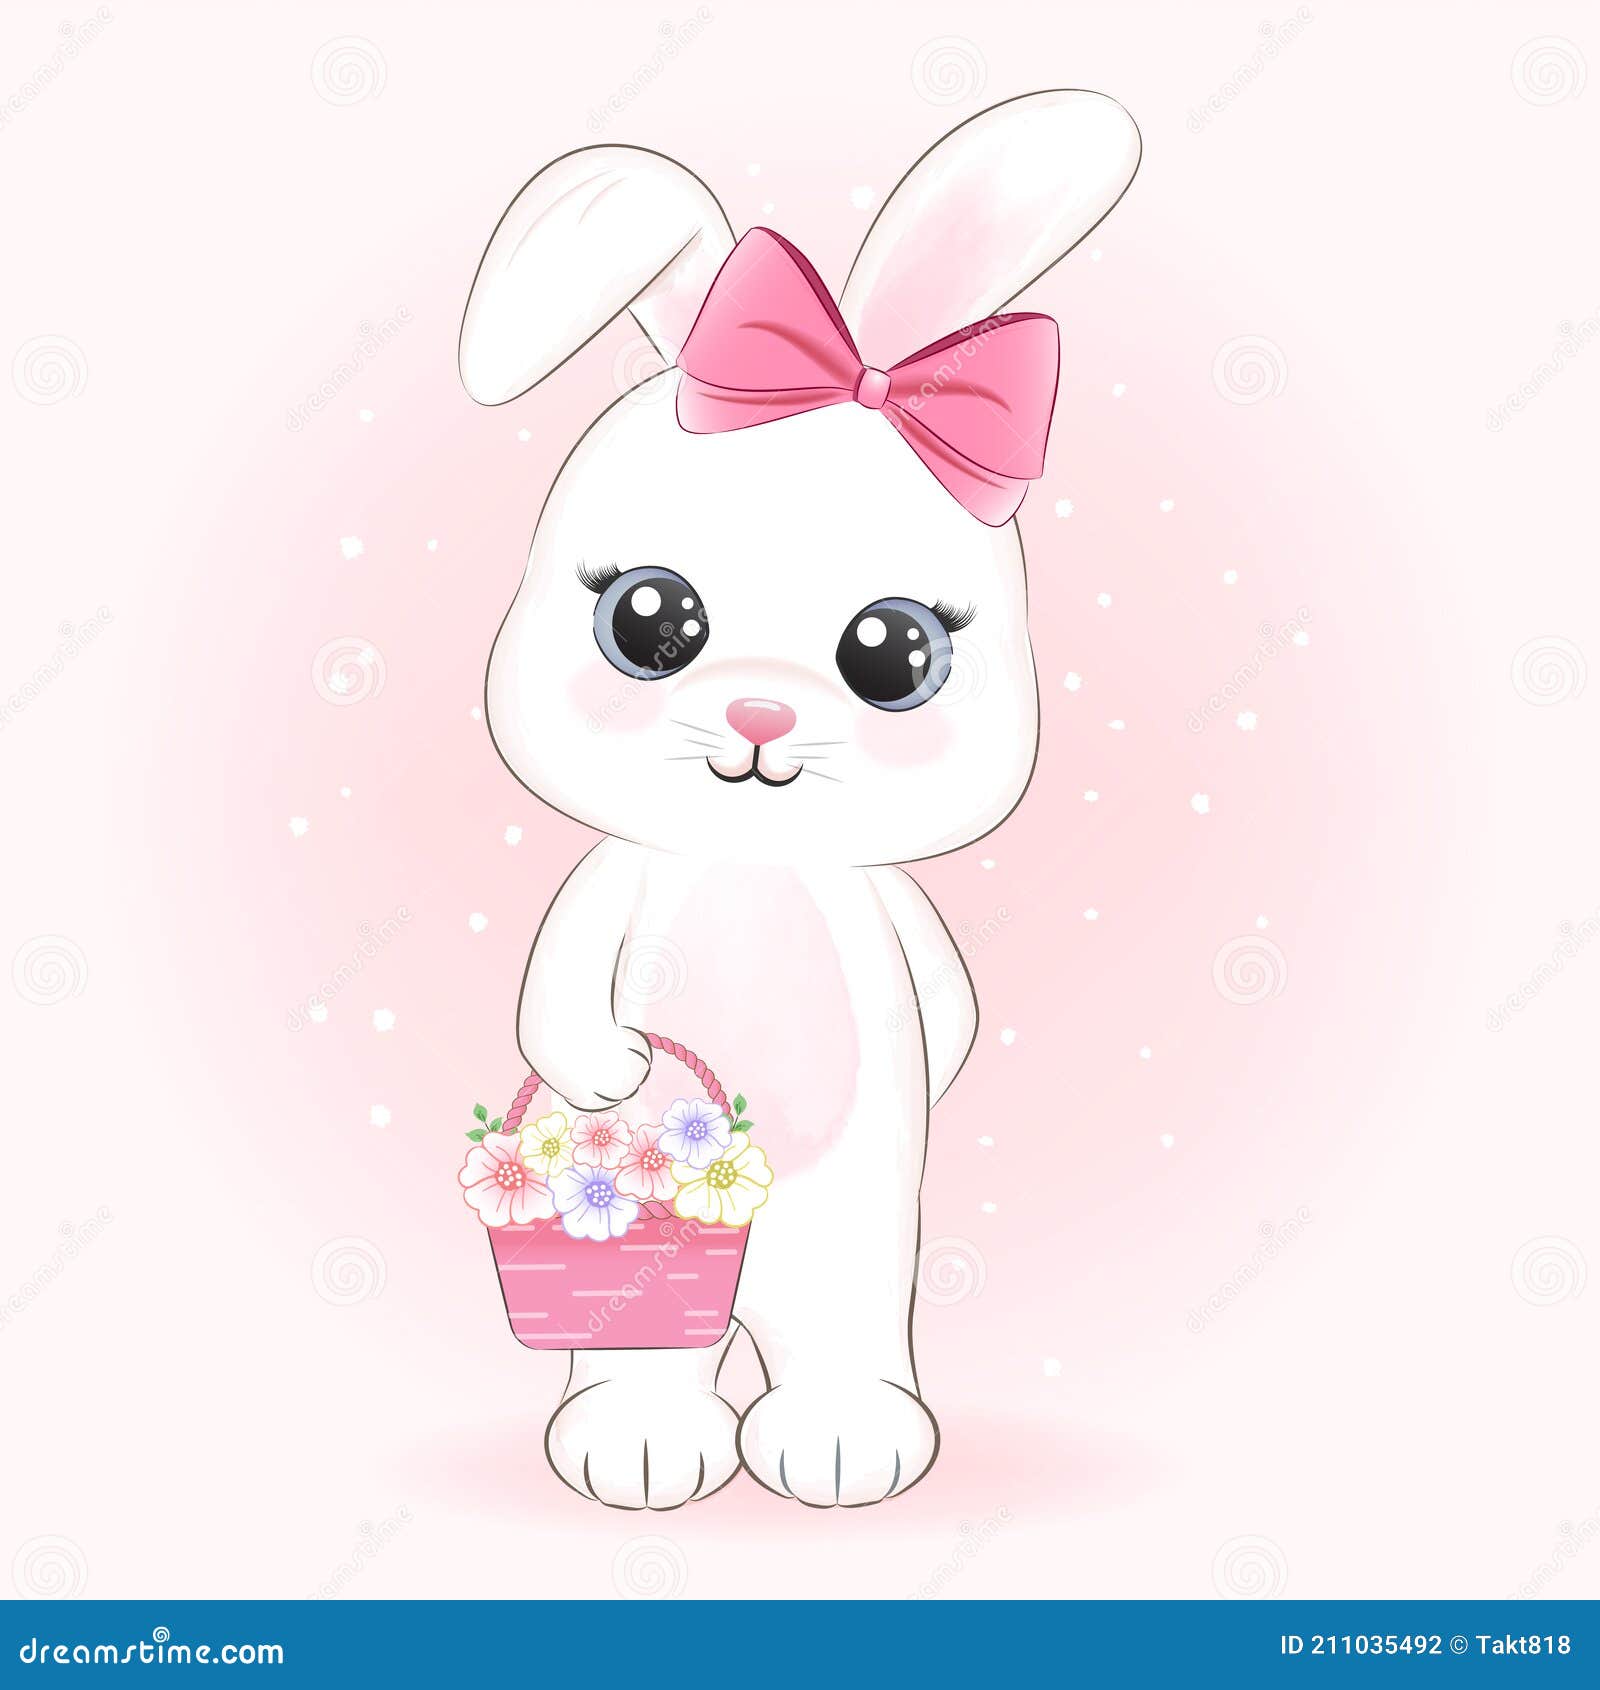 ilustração de coelho fofo coelho kawaii chibi estilo de desenho vetorial  coelho coelhinho dos desenhos animados 17048040 Vetor no Vecteezy